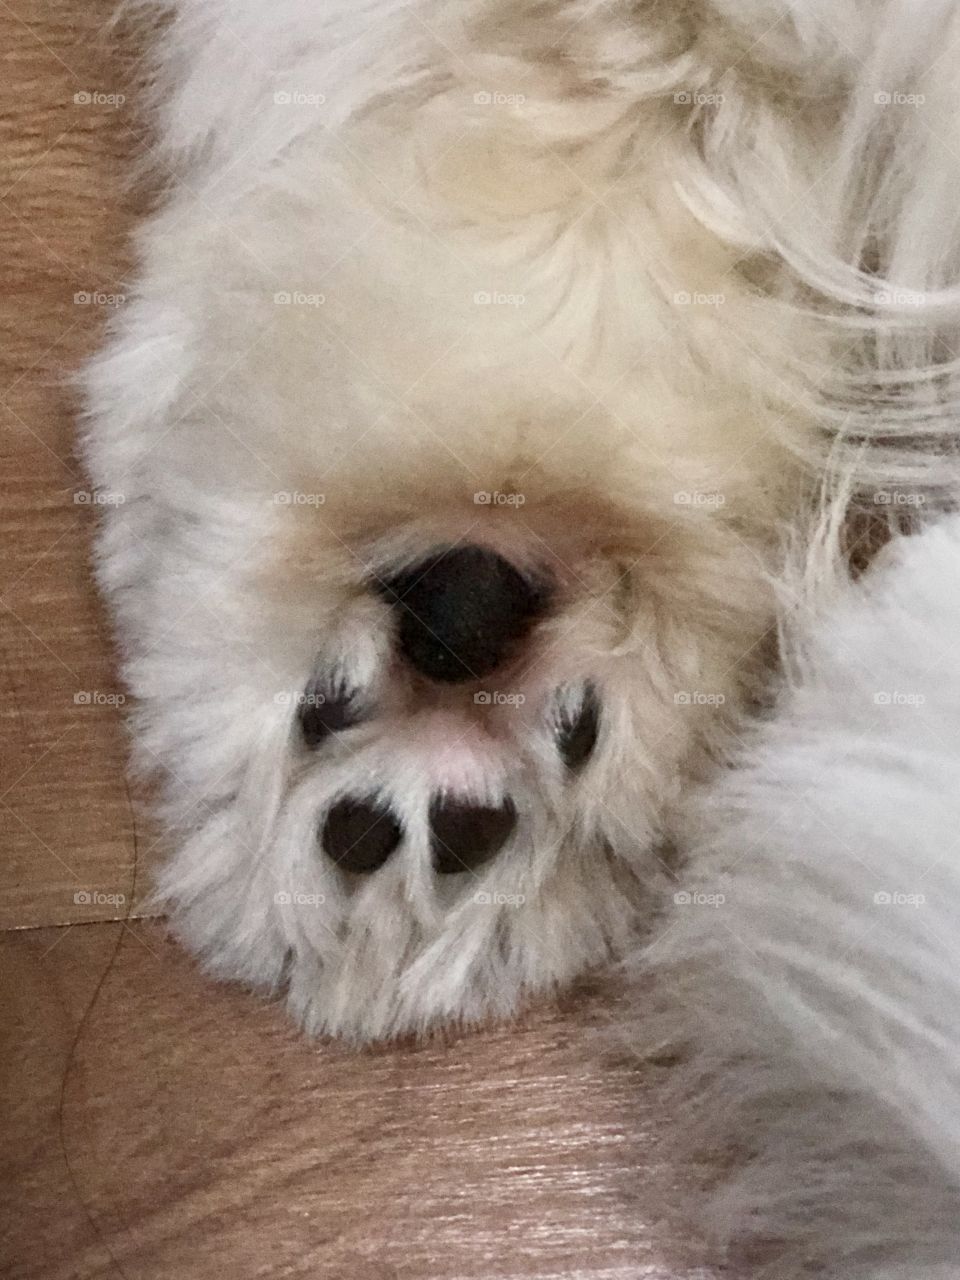 Cutest dog paw 🐾